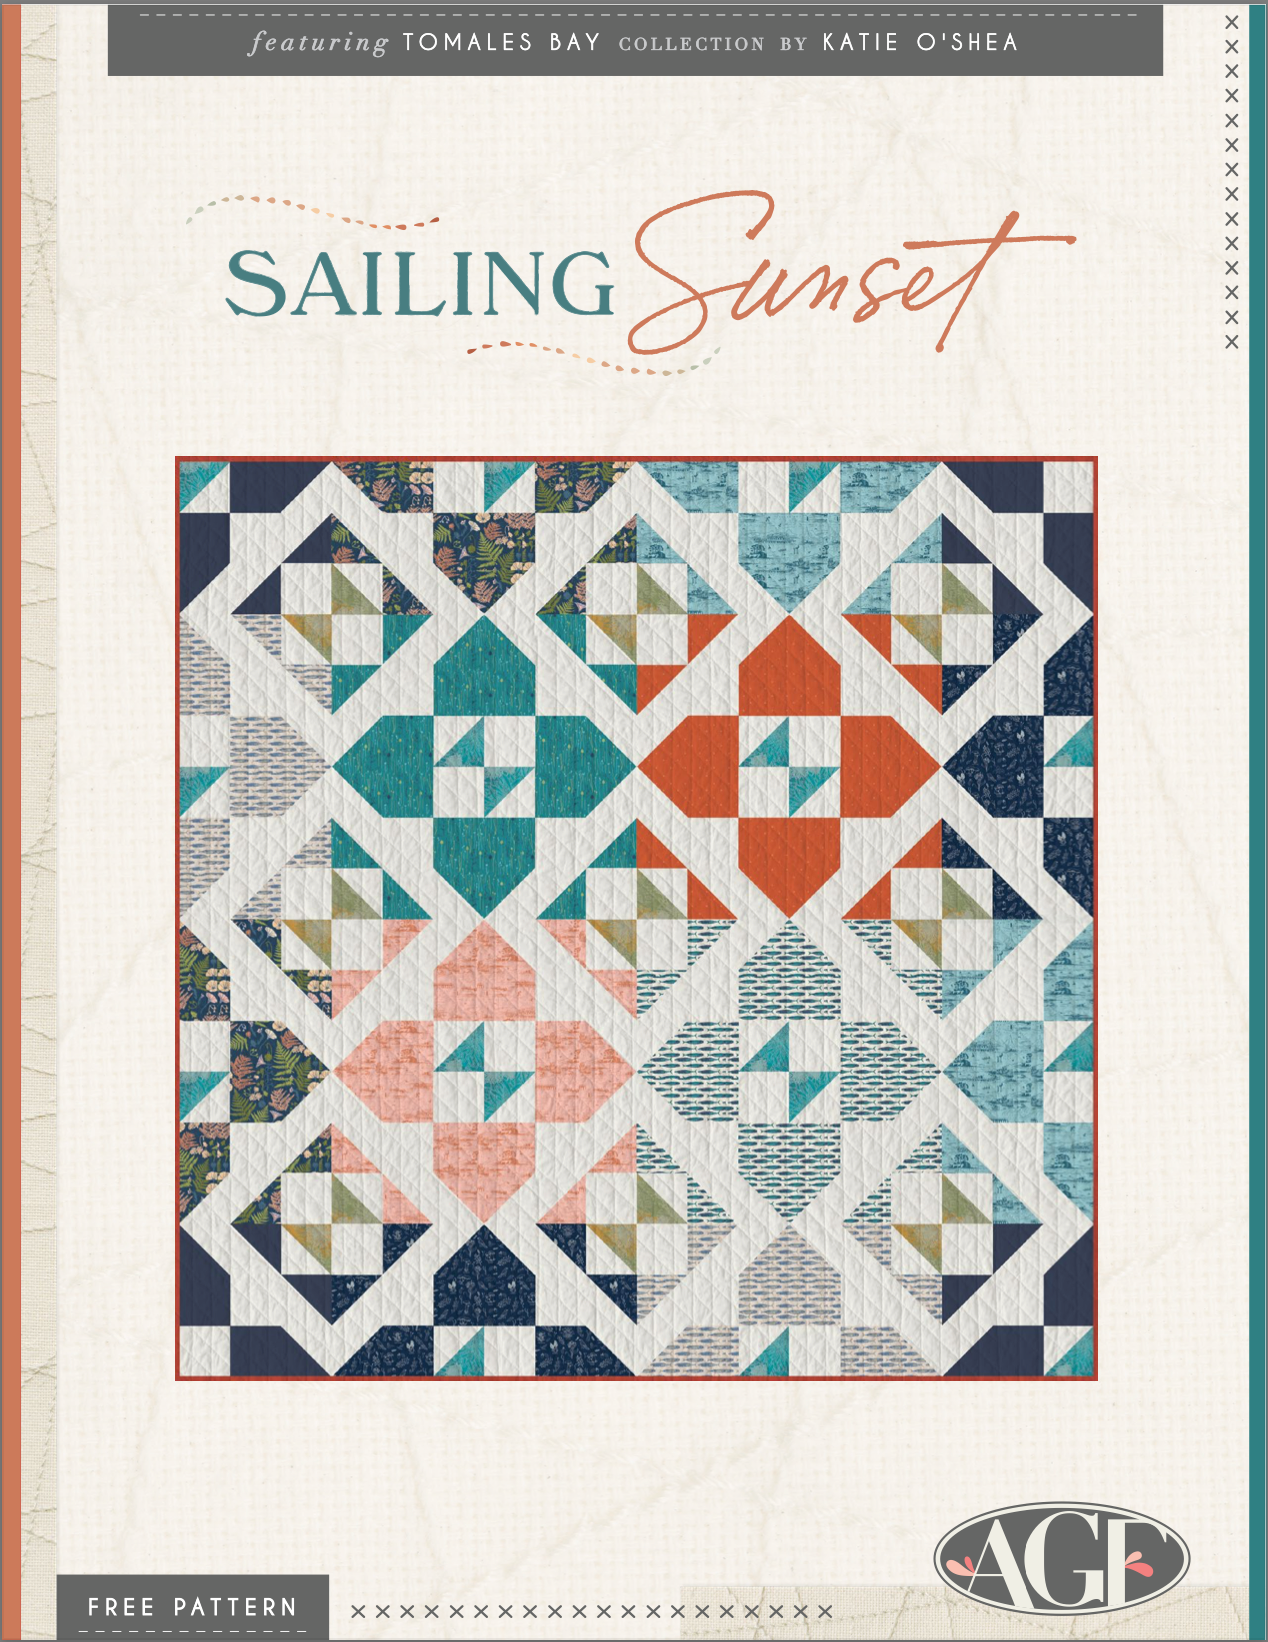 Modèle de courtepointe gratuit Sailing Sunset mettant en vedette Tomales Bay par Katie O'Shea